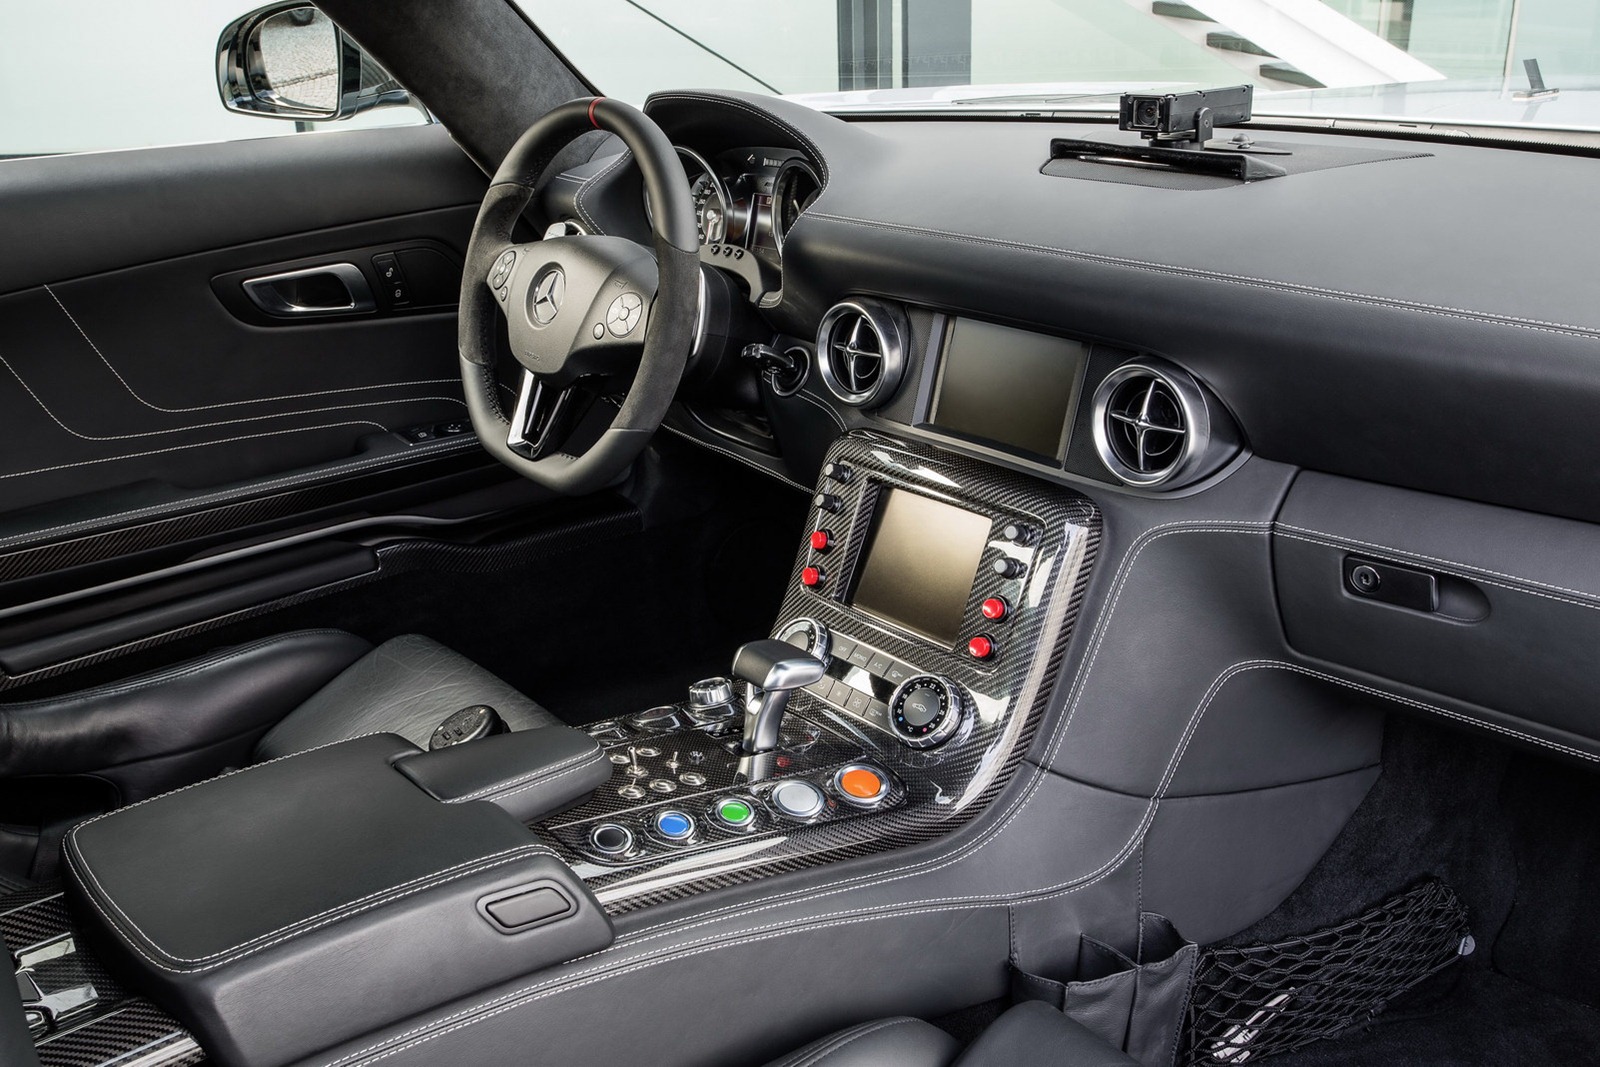 Mercedes-SLS-AMG-GT-Safety-Car-8%25255B2%25255D.jpg